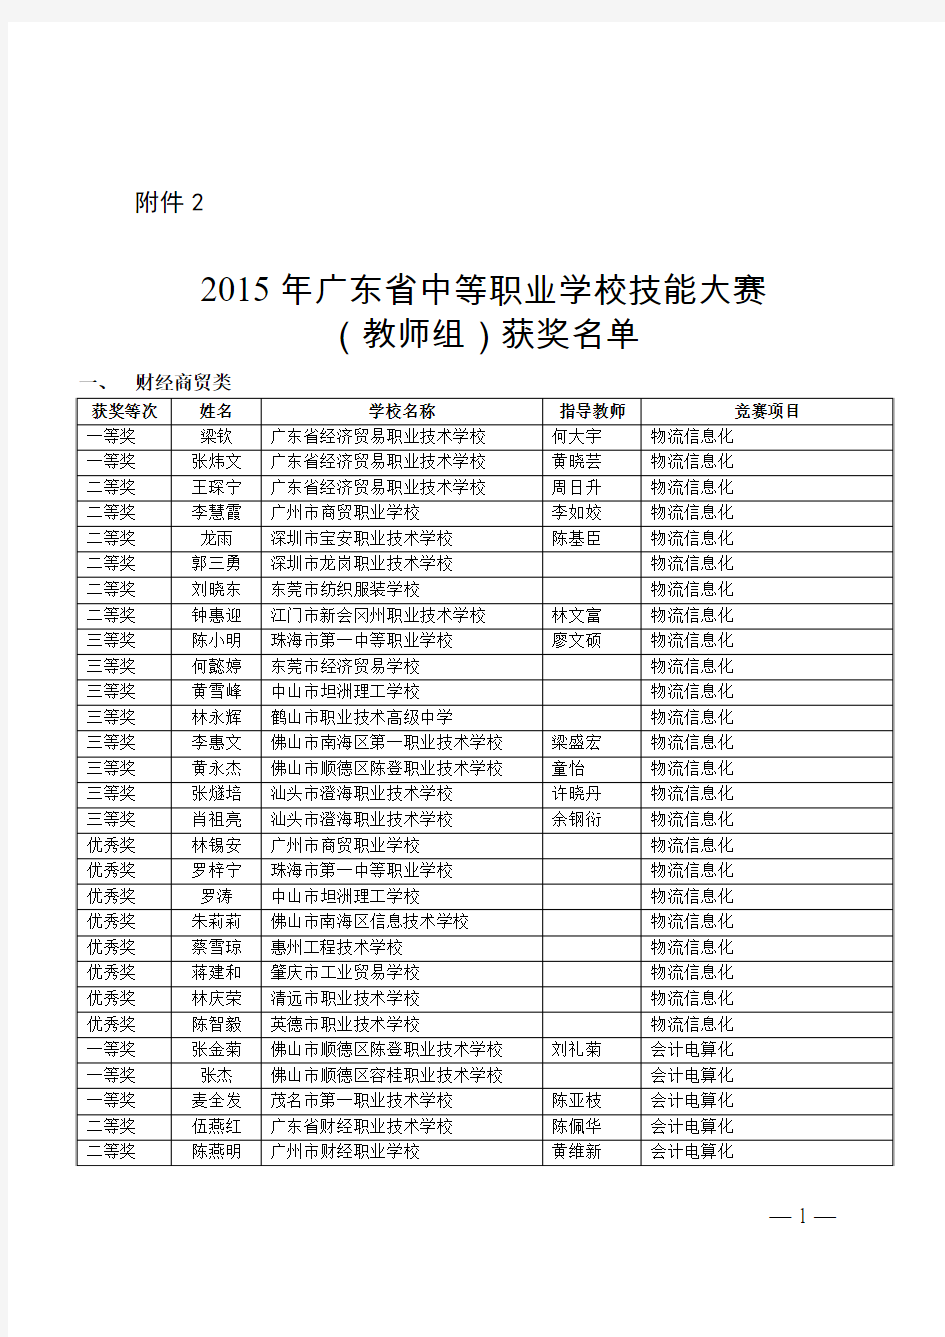 2015年广东省中等职业学校技能大赛(教师组)获奖名单